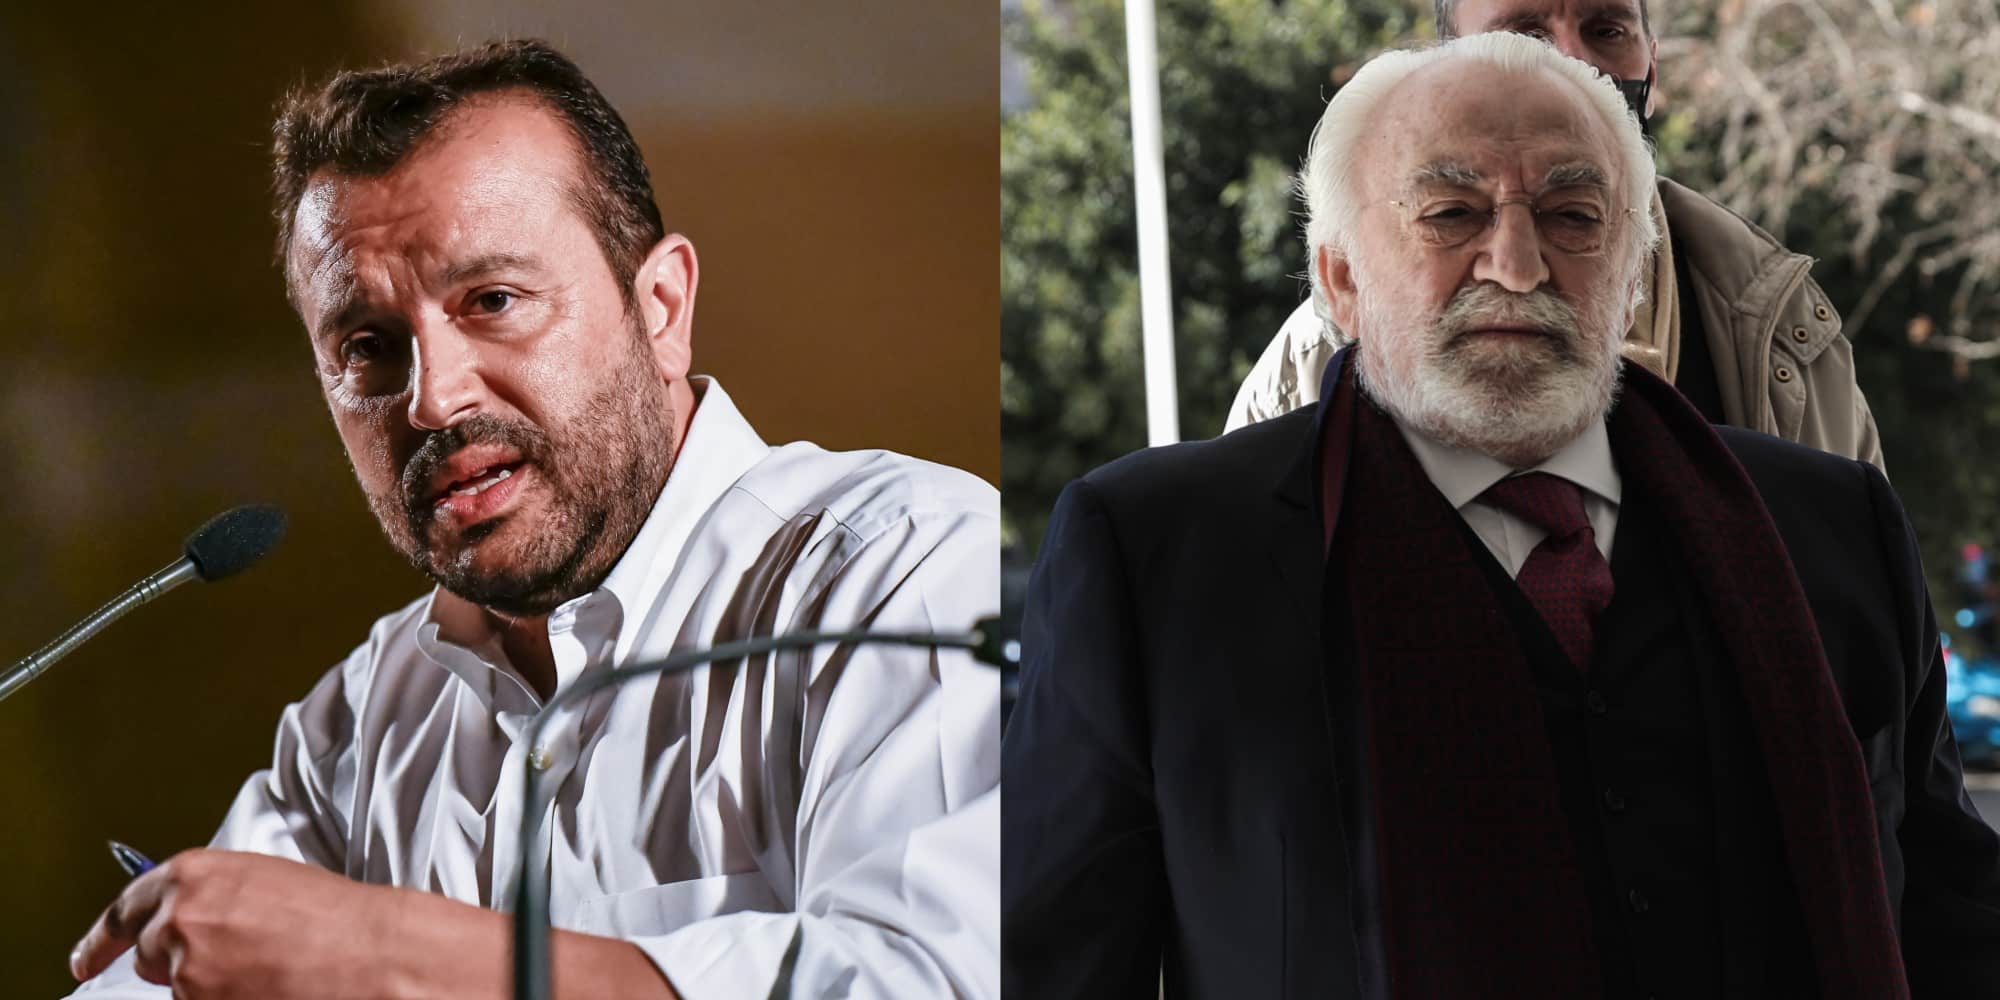 Ο πρώην υπουργός του ΣΥΡΙΖΑ Νίκος Παππάς και ο επιχειρηματίας Χρήστος Καλογρίτσας